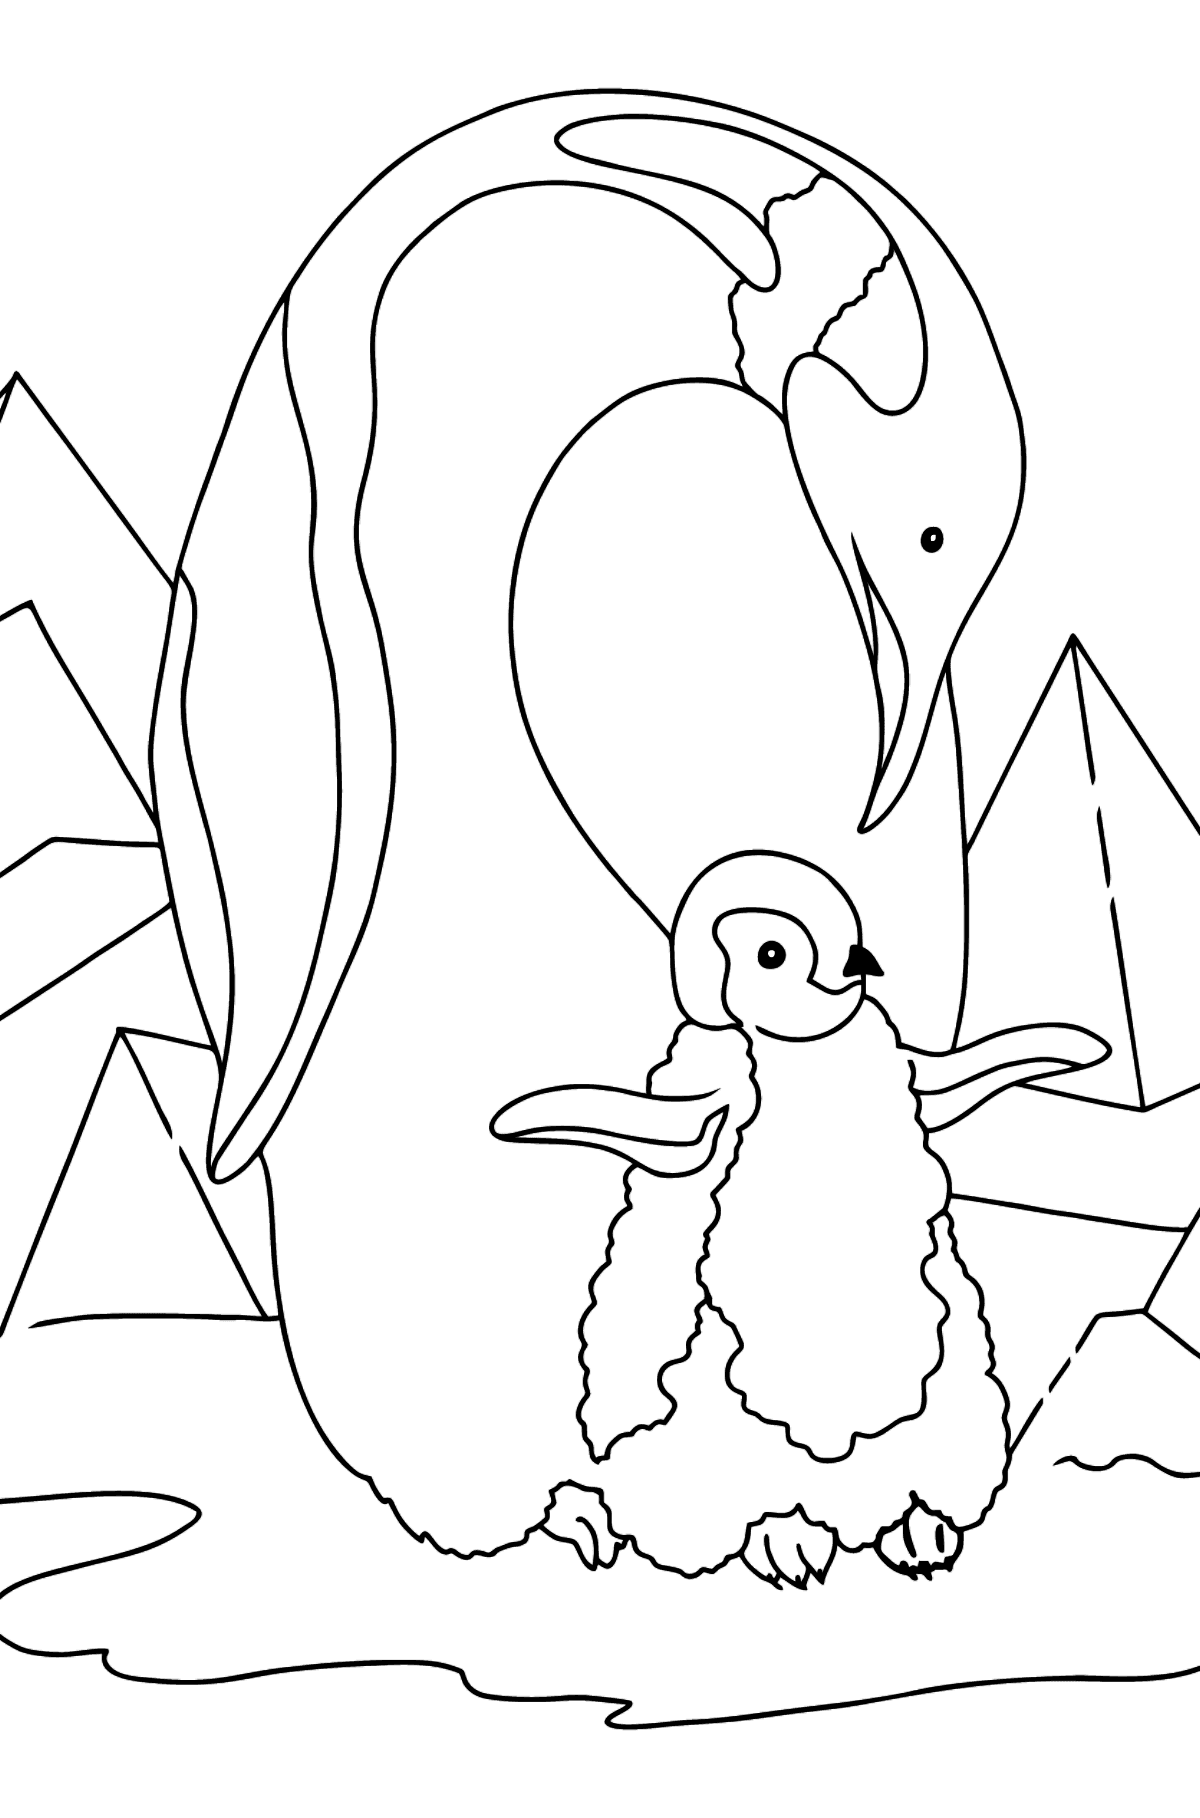 Pingwin kolorowanka dla dzieci - Kolorowanki dla dzieci